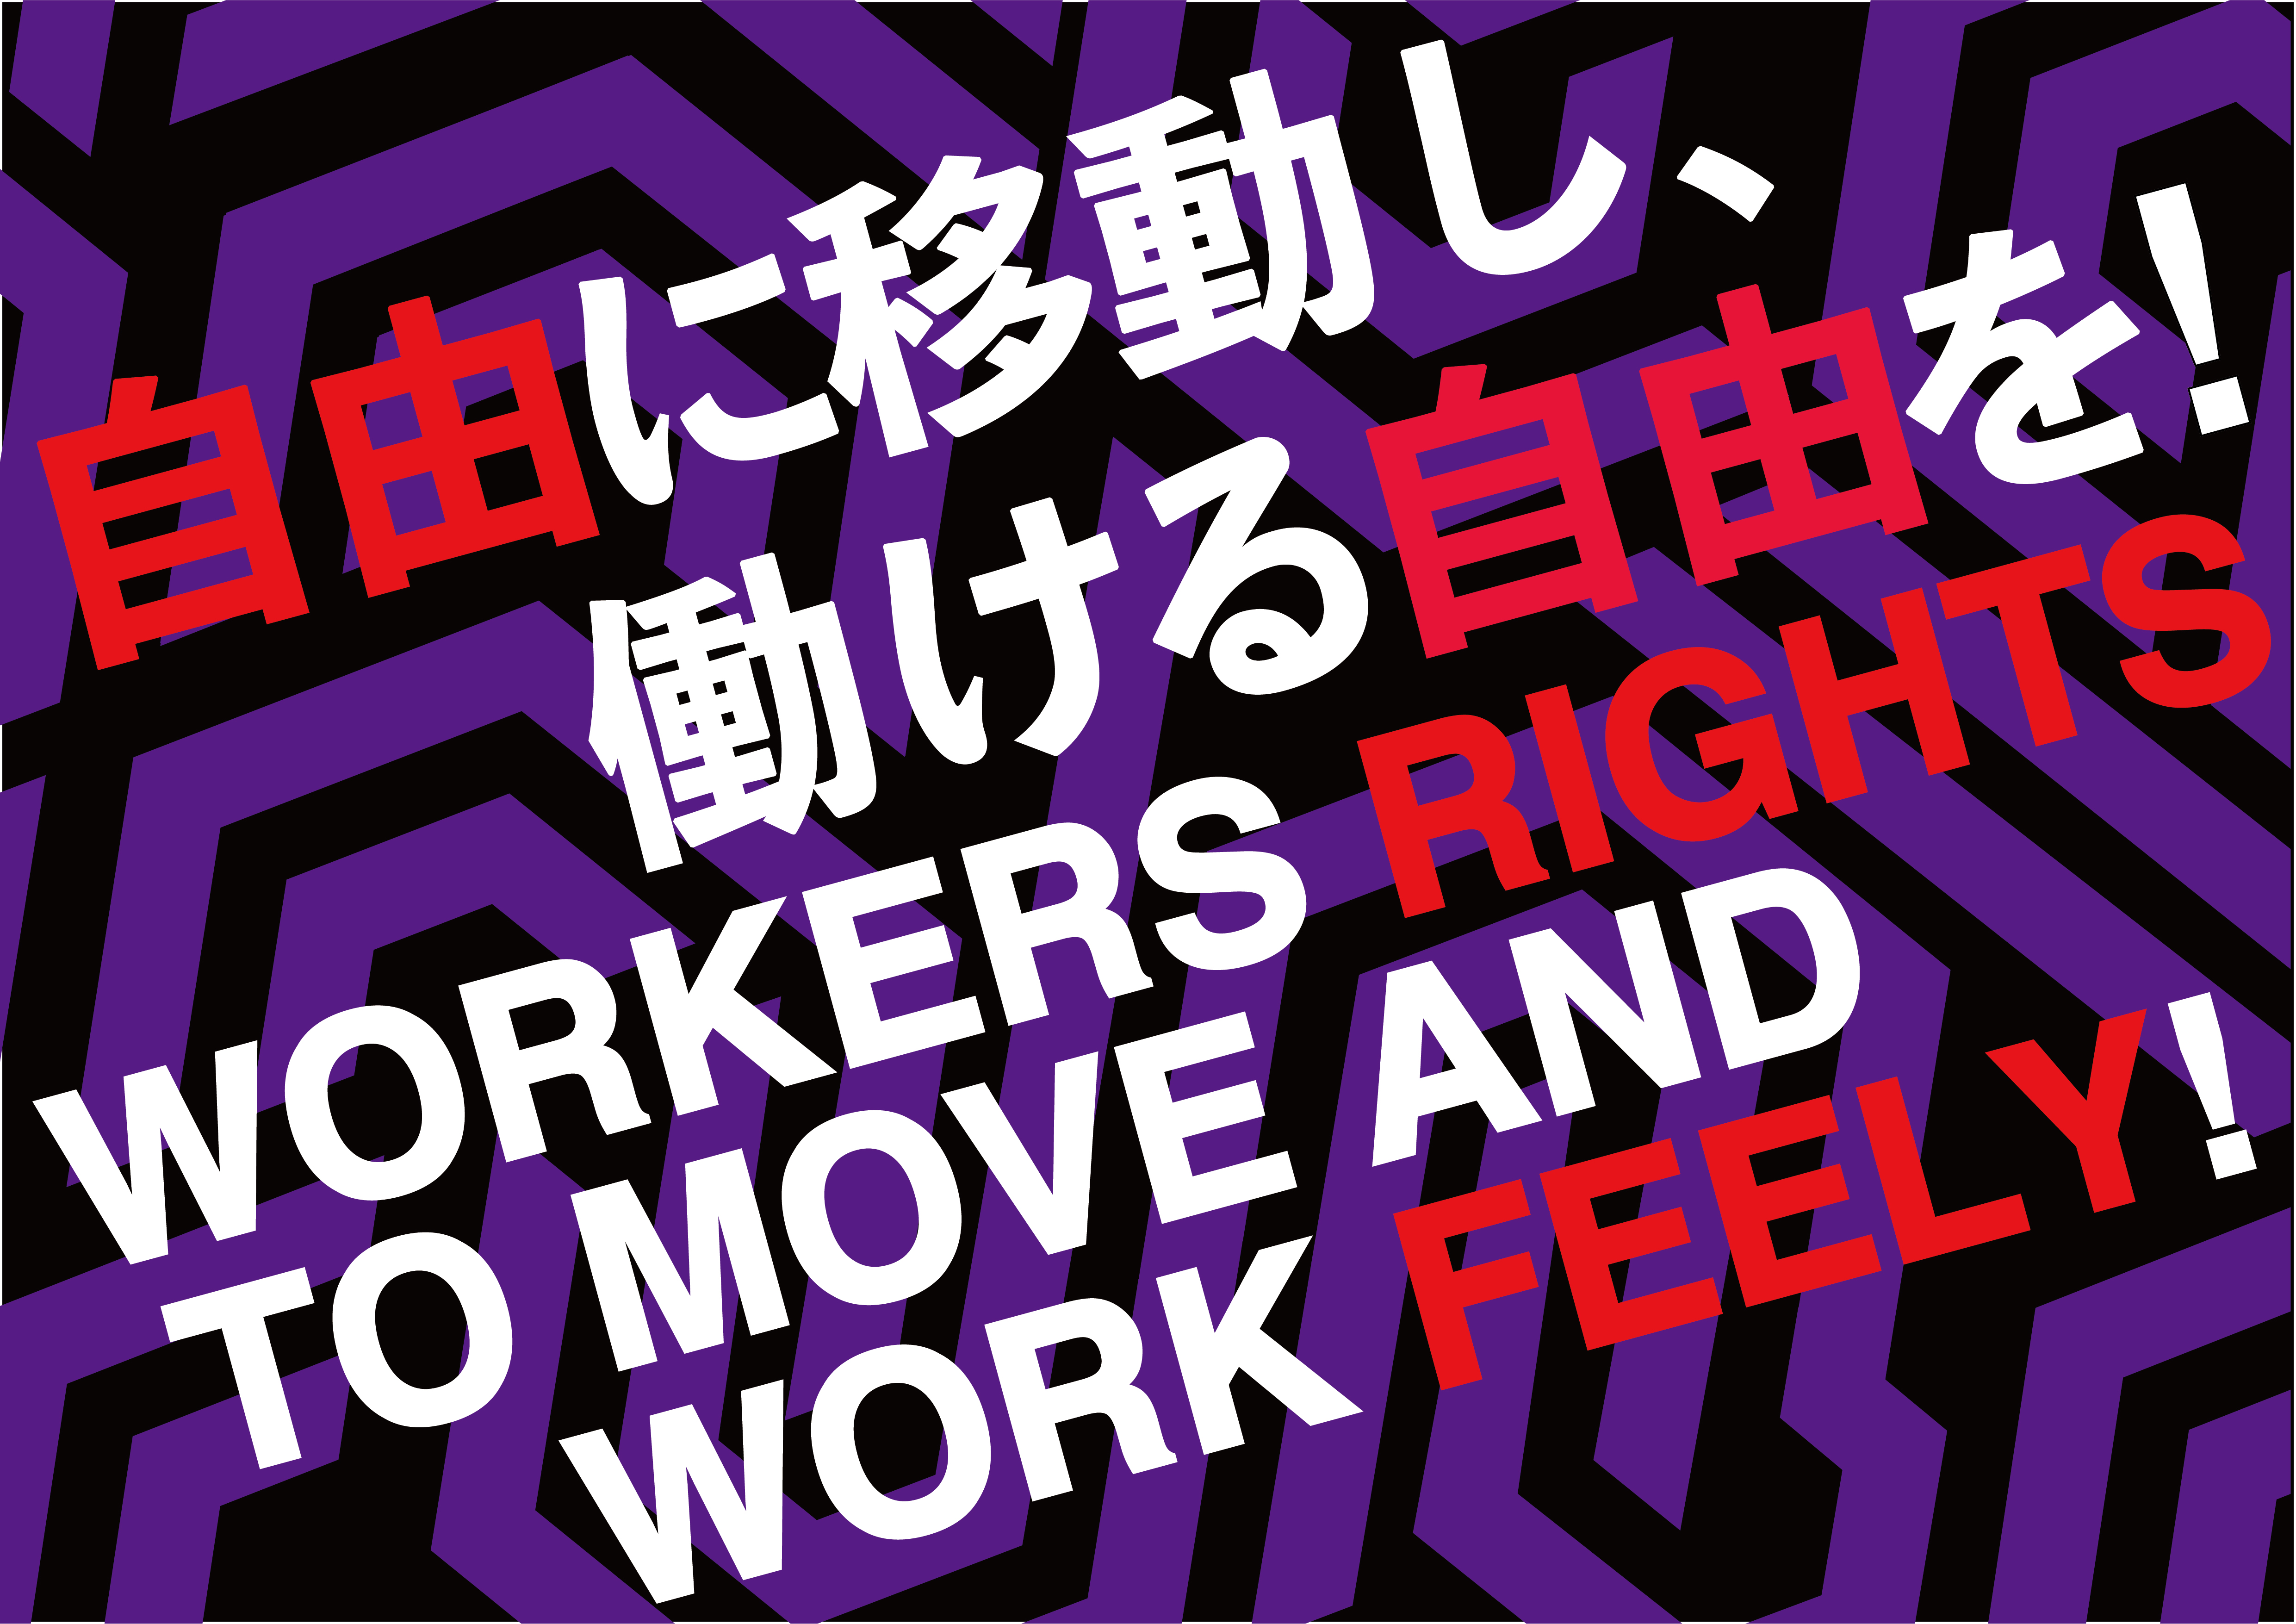 自由に移動し、働ける自由を！Workers Rights to move and work feely! 